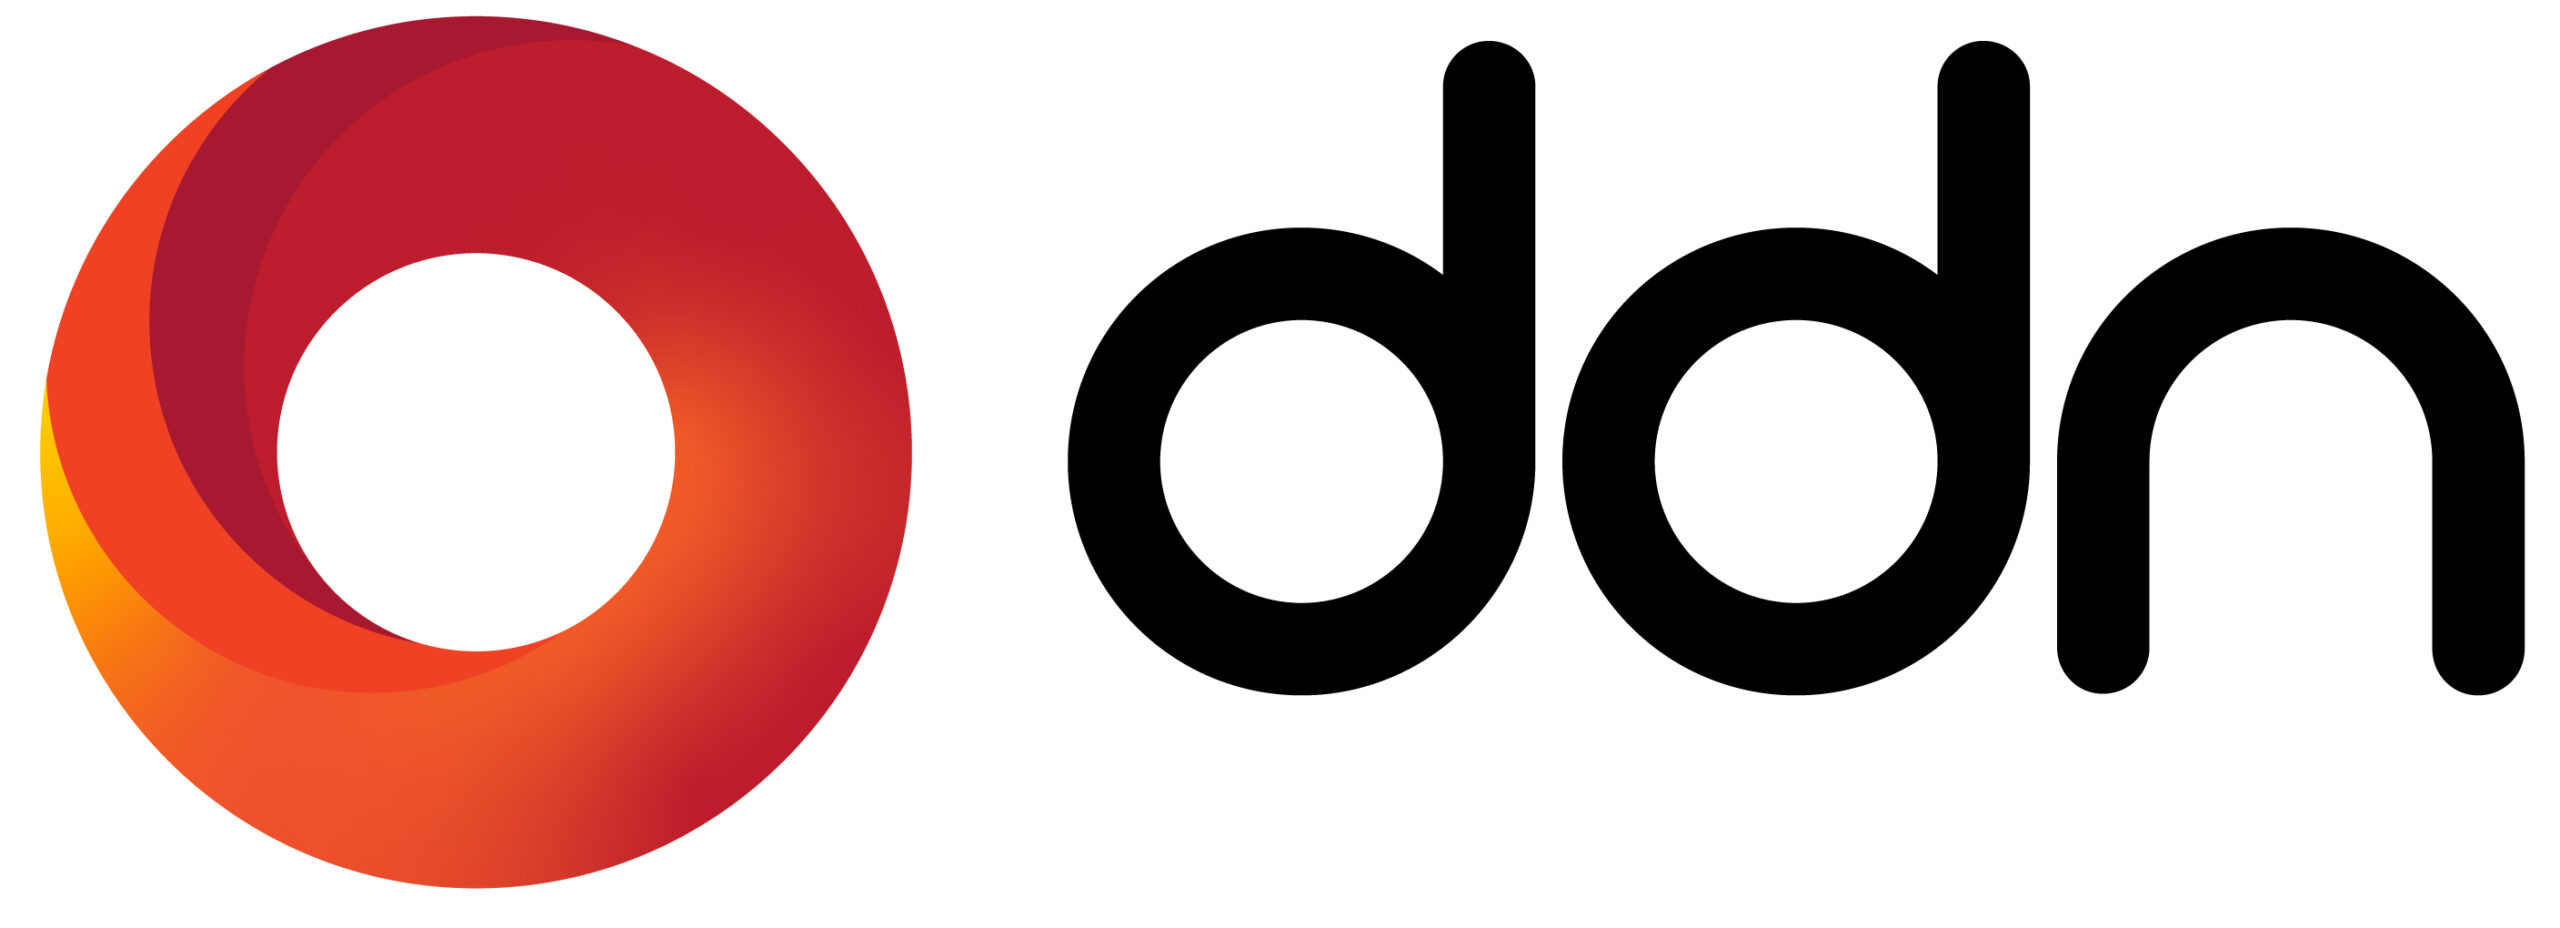 ddn logo